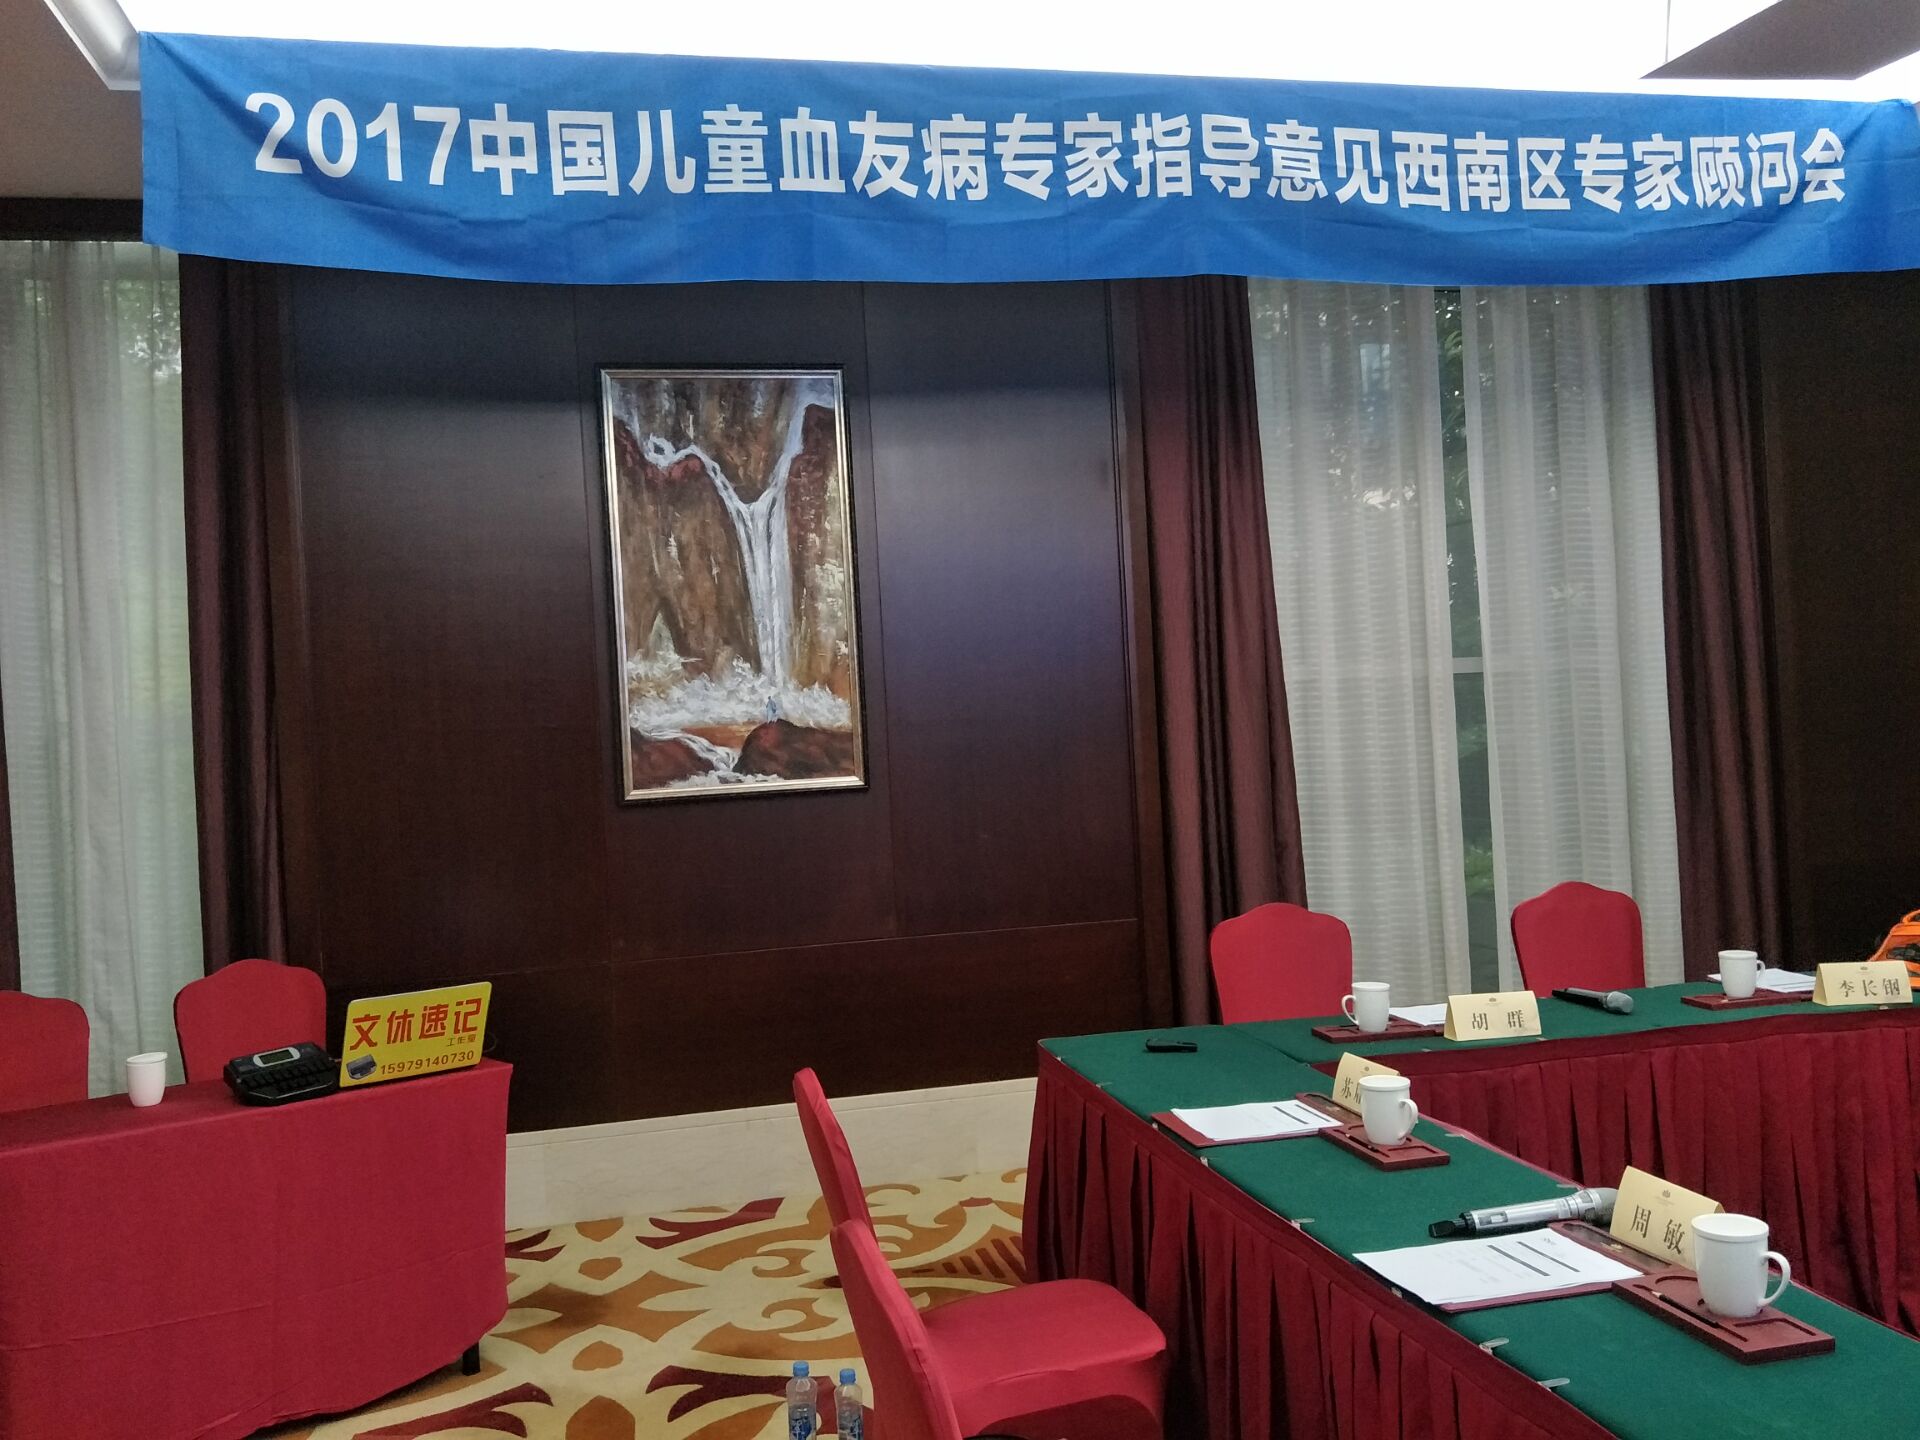 2017中国儿童血友病专家指导意见专家顾问会-西南区